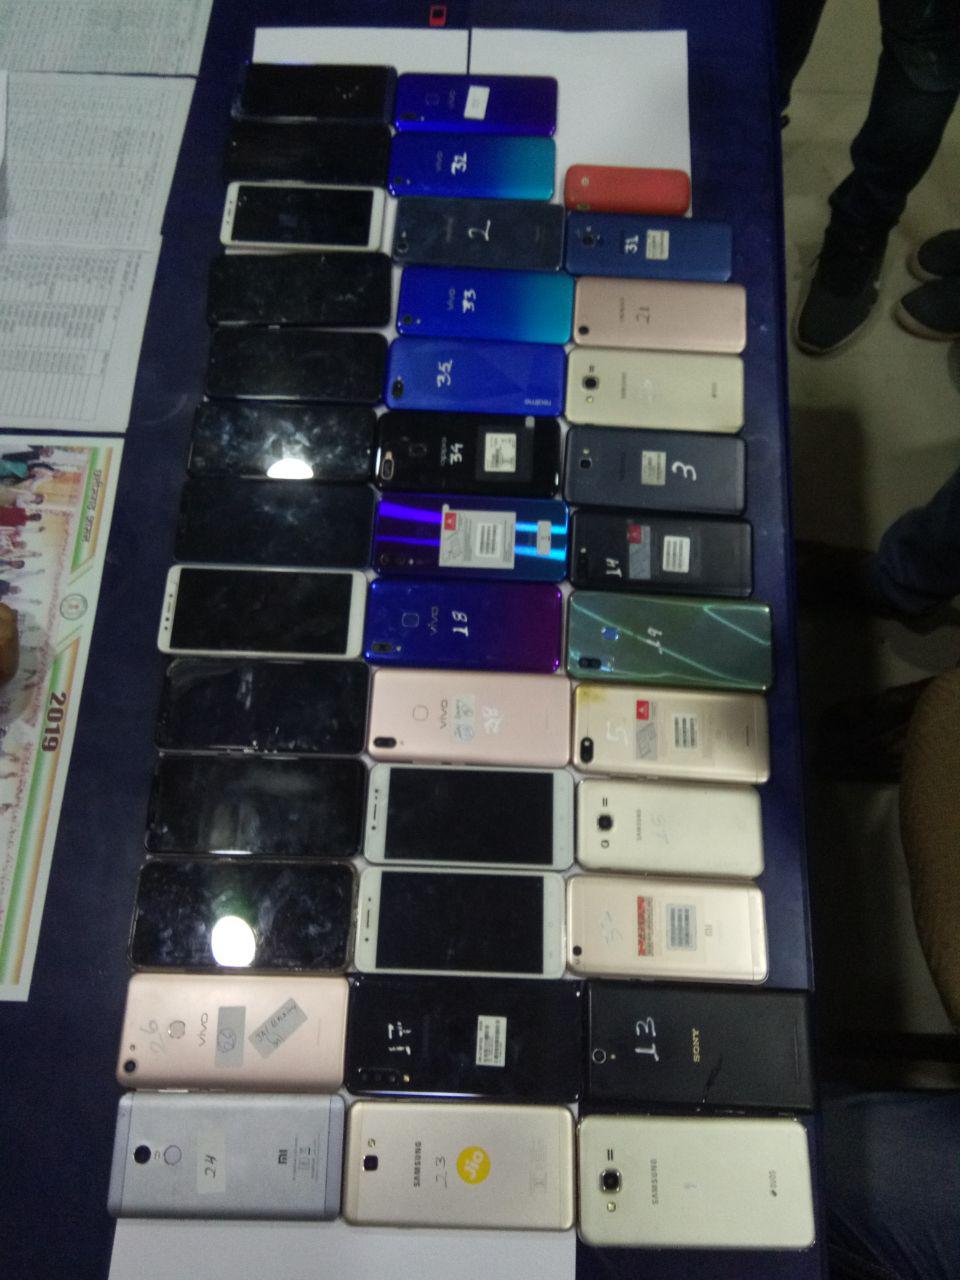 हजारों के मोबाइल नाबालिगों से करवाते थे चोरी, नेपाल में कौड़ियों के दाम में बेच देते थे